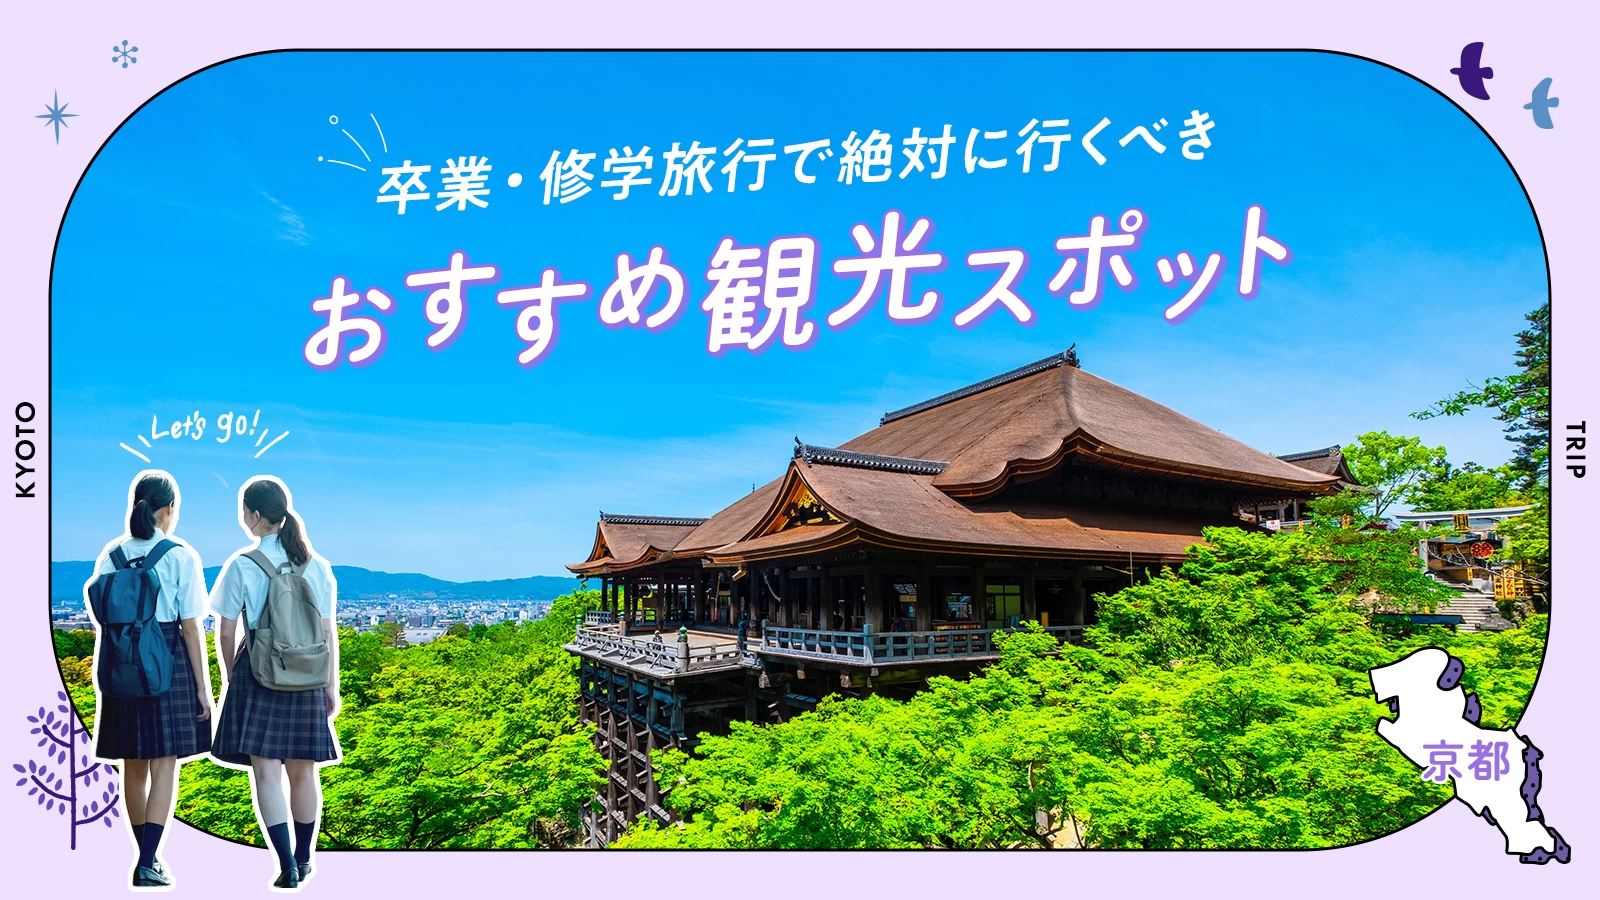 【京都】卒業・修学旅行で絶対に行くべきおすすめ観光スポット17選